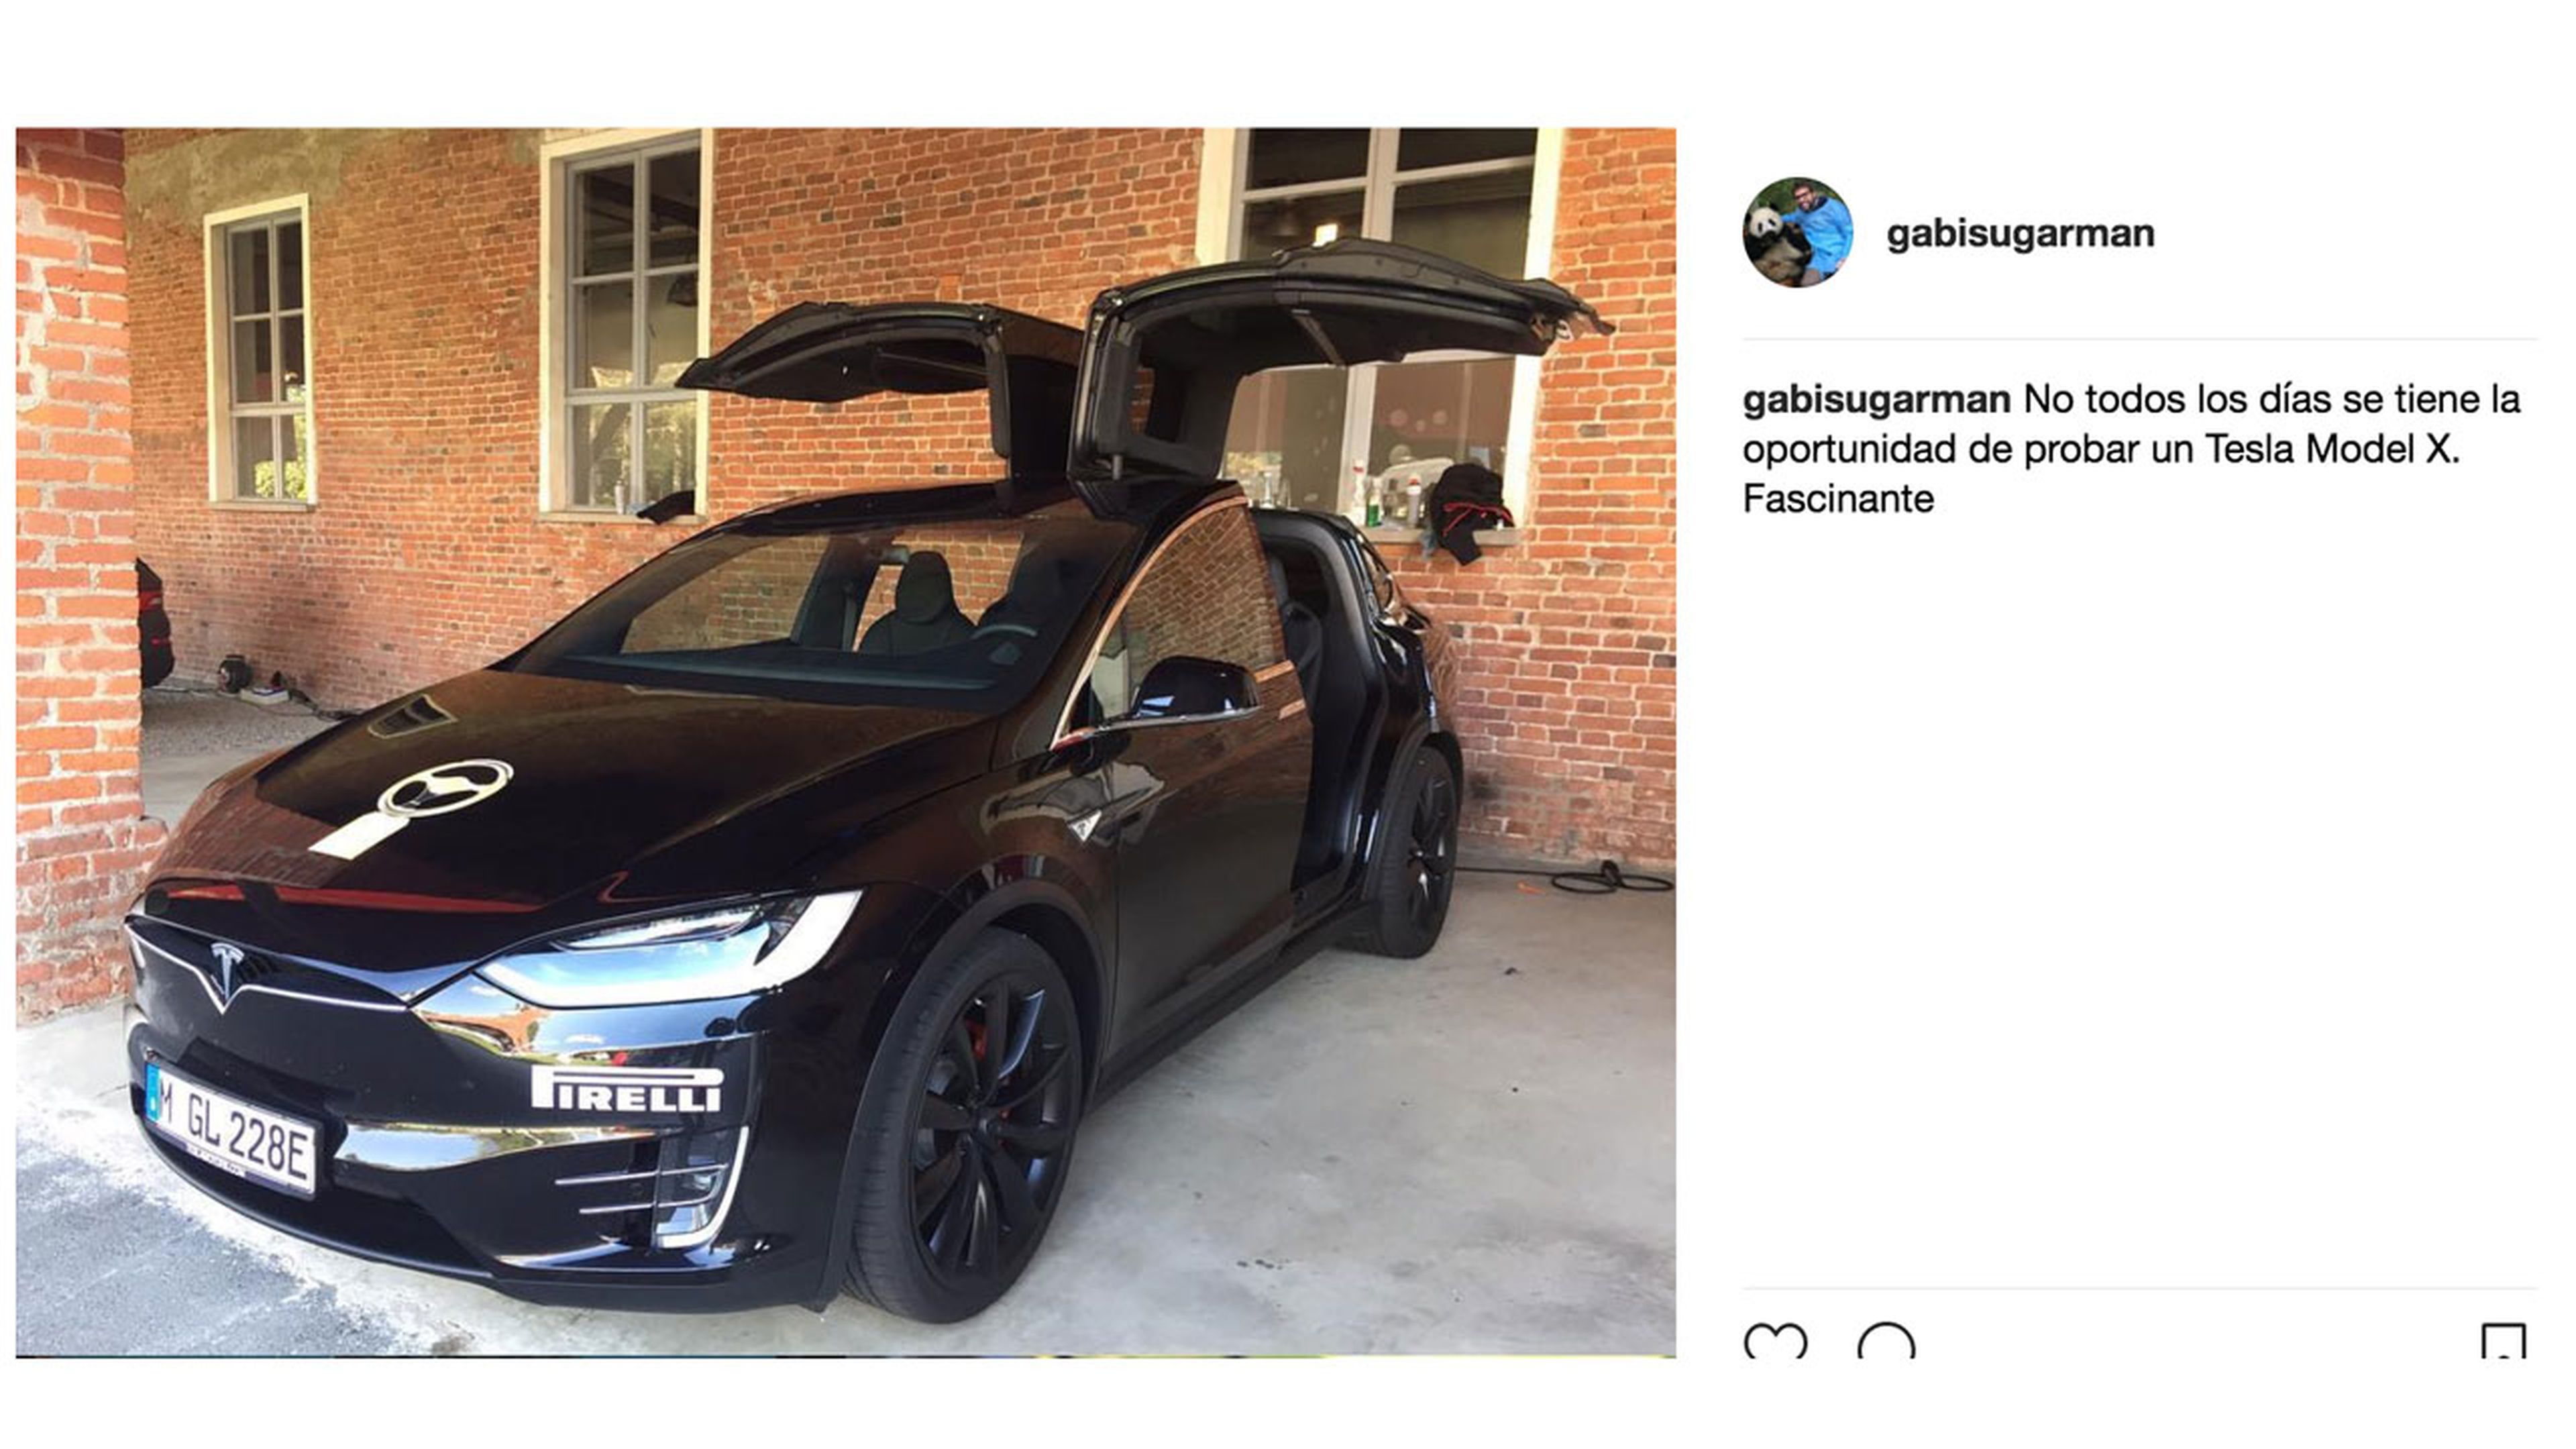 Foto de la prueba del Tesla Model X publicada en Instagram.